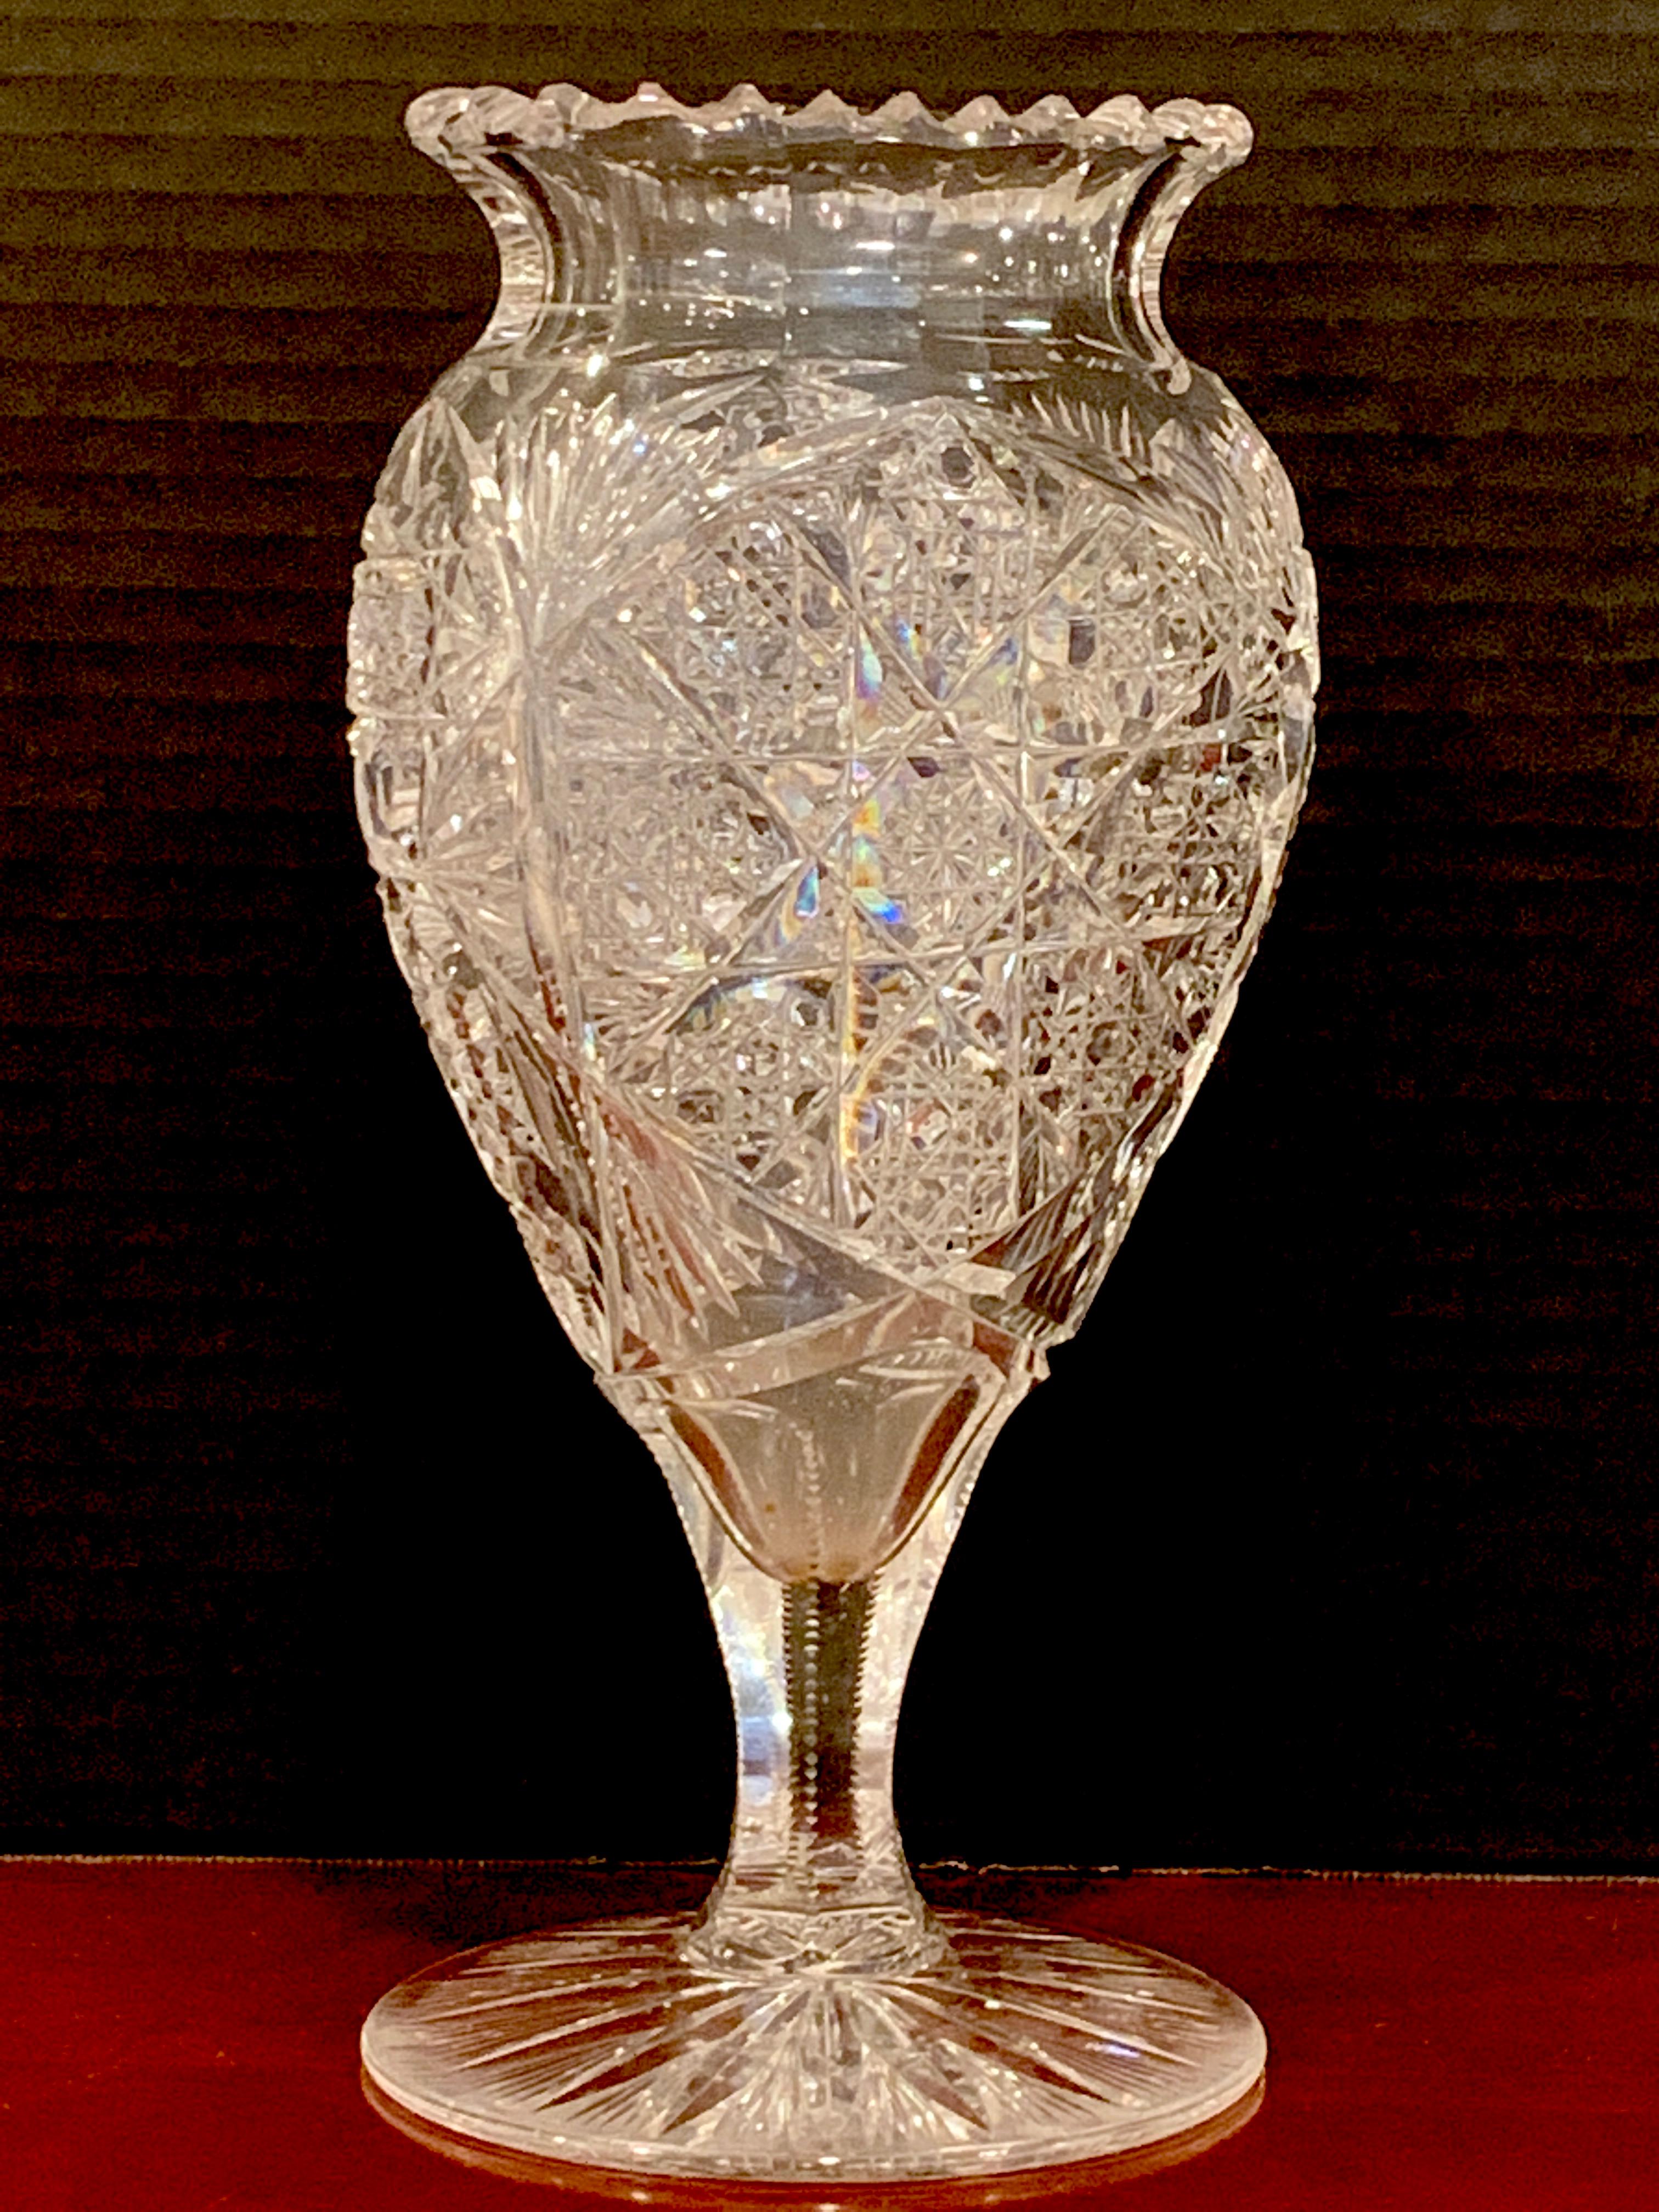 Old crystal vase molded heart-shaped vase in vintage molded glass